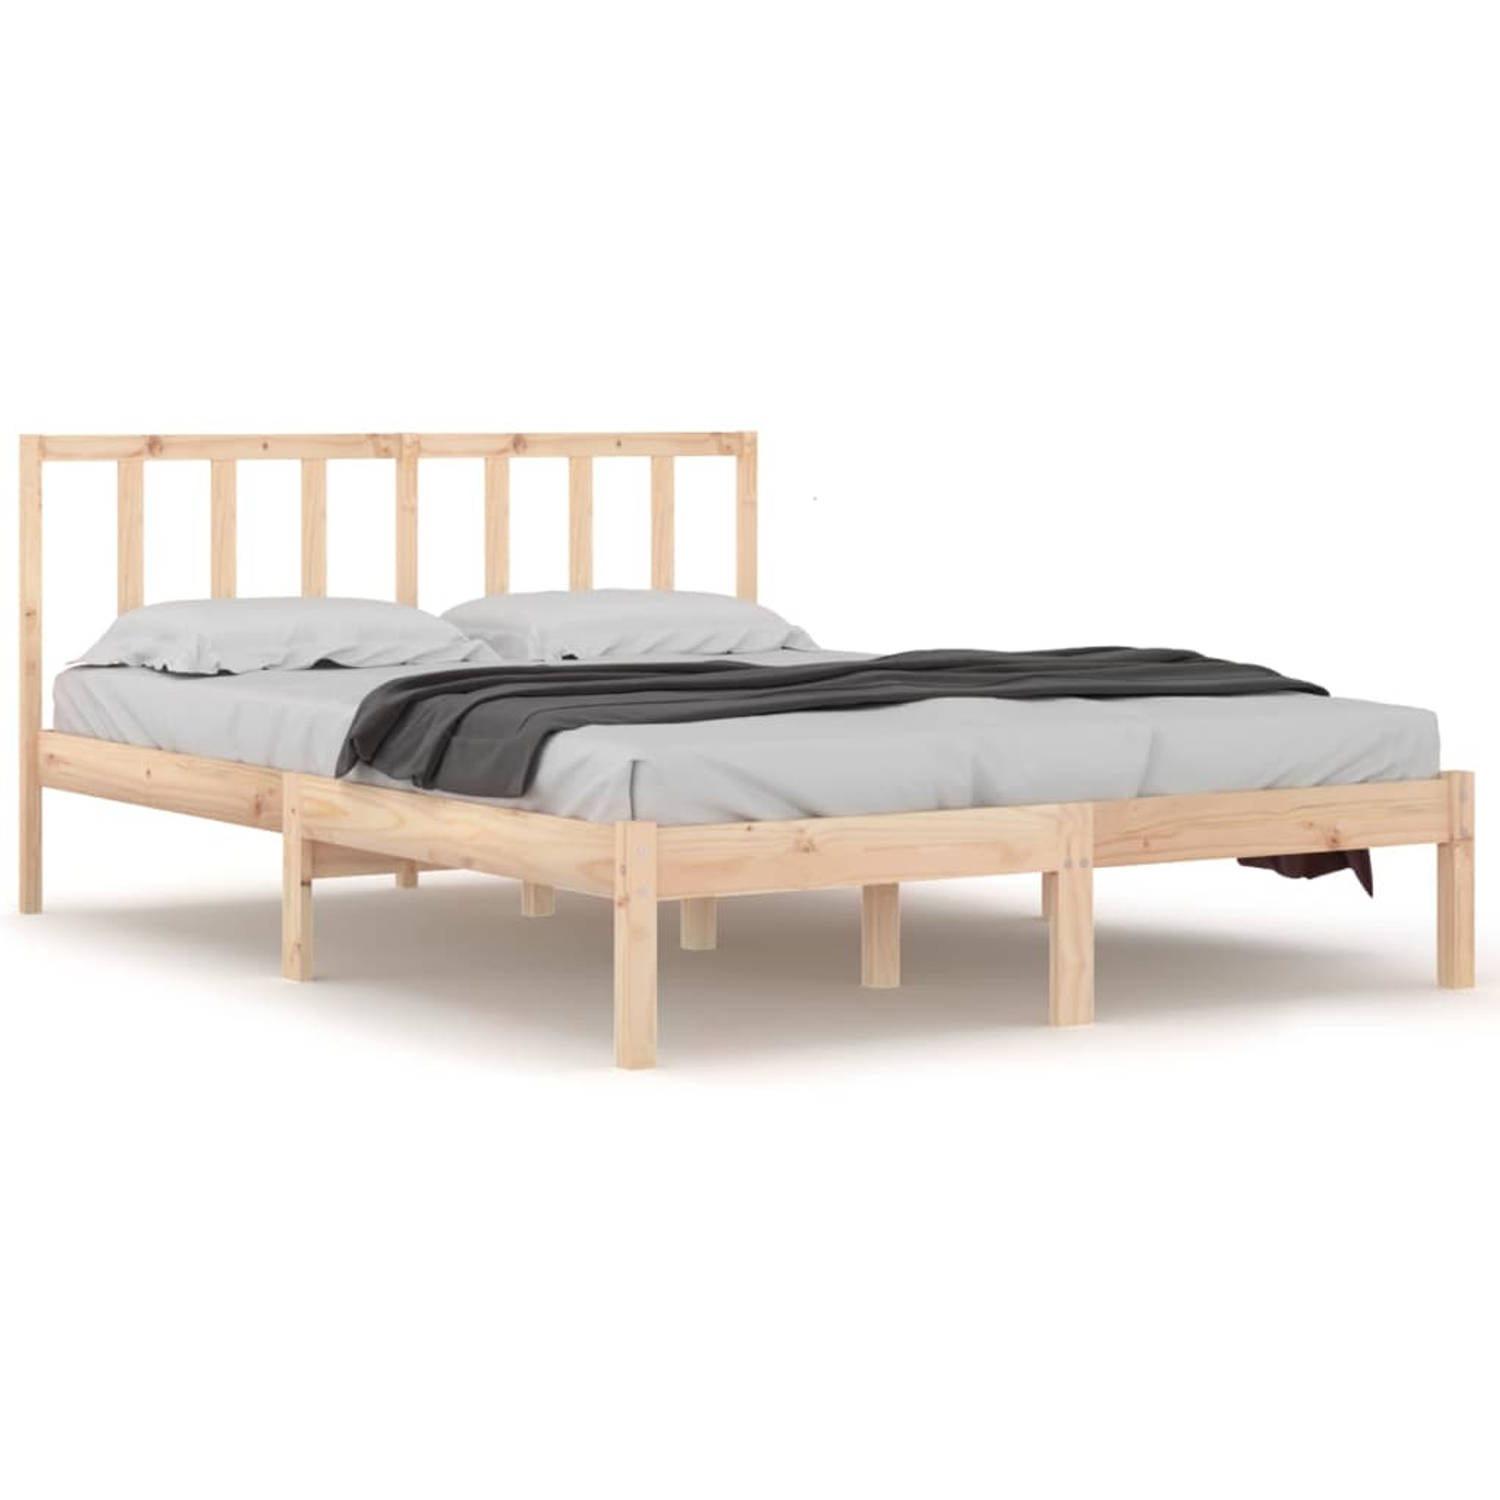 The Living Store Bedframe massief grenenhout 140x190 cm - Bedframe - Bedframes - Bed - Bedbodem - Ledikant - Bed Frame - Massief Houten Bedframe - Slaapmeubel - Bedden - Bedbodems